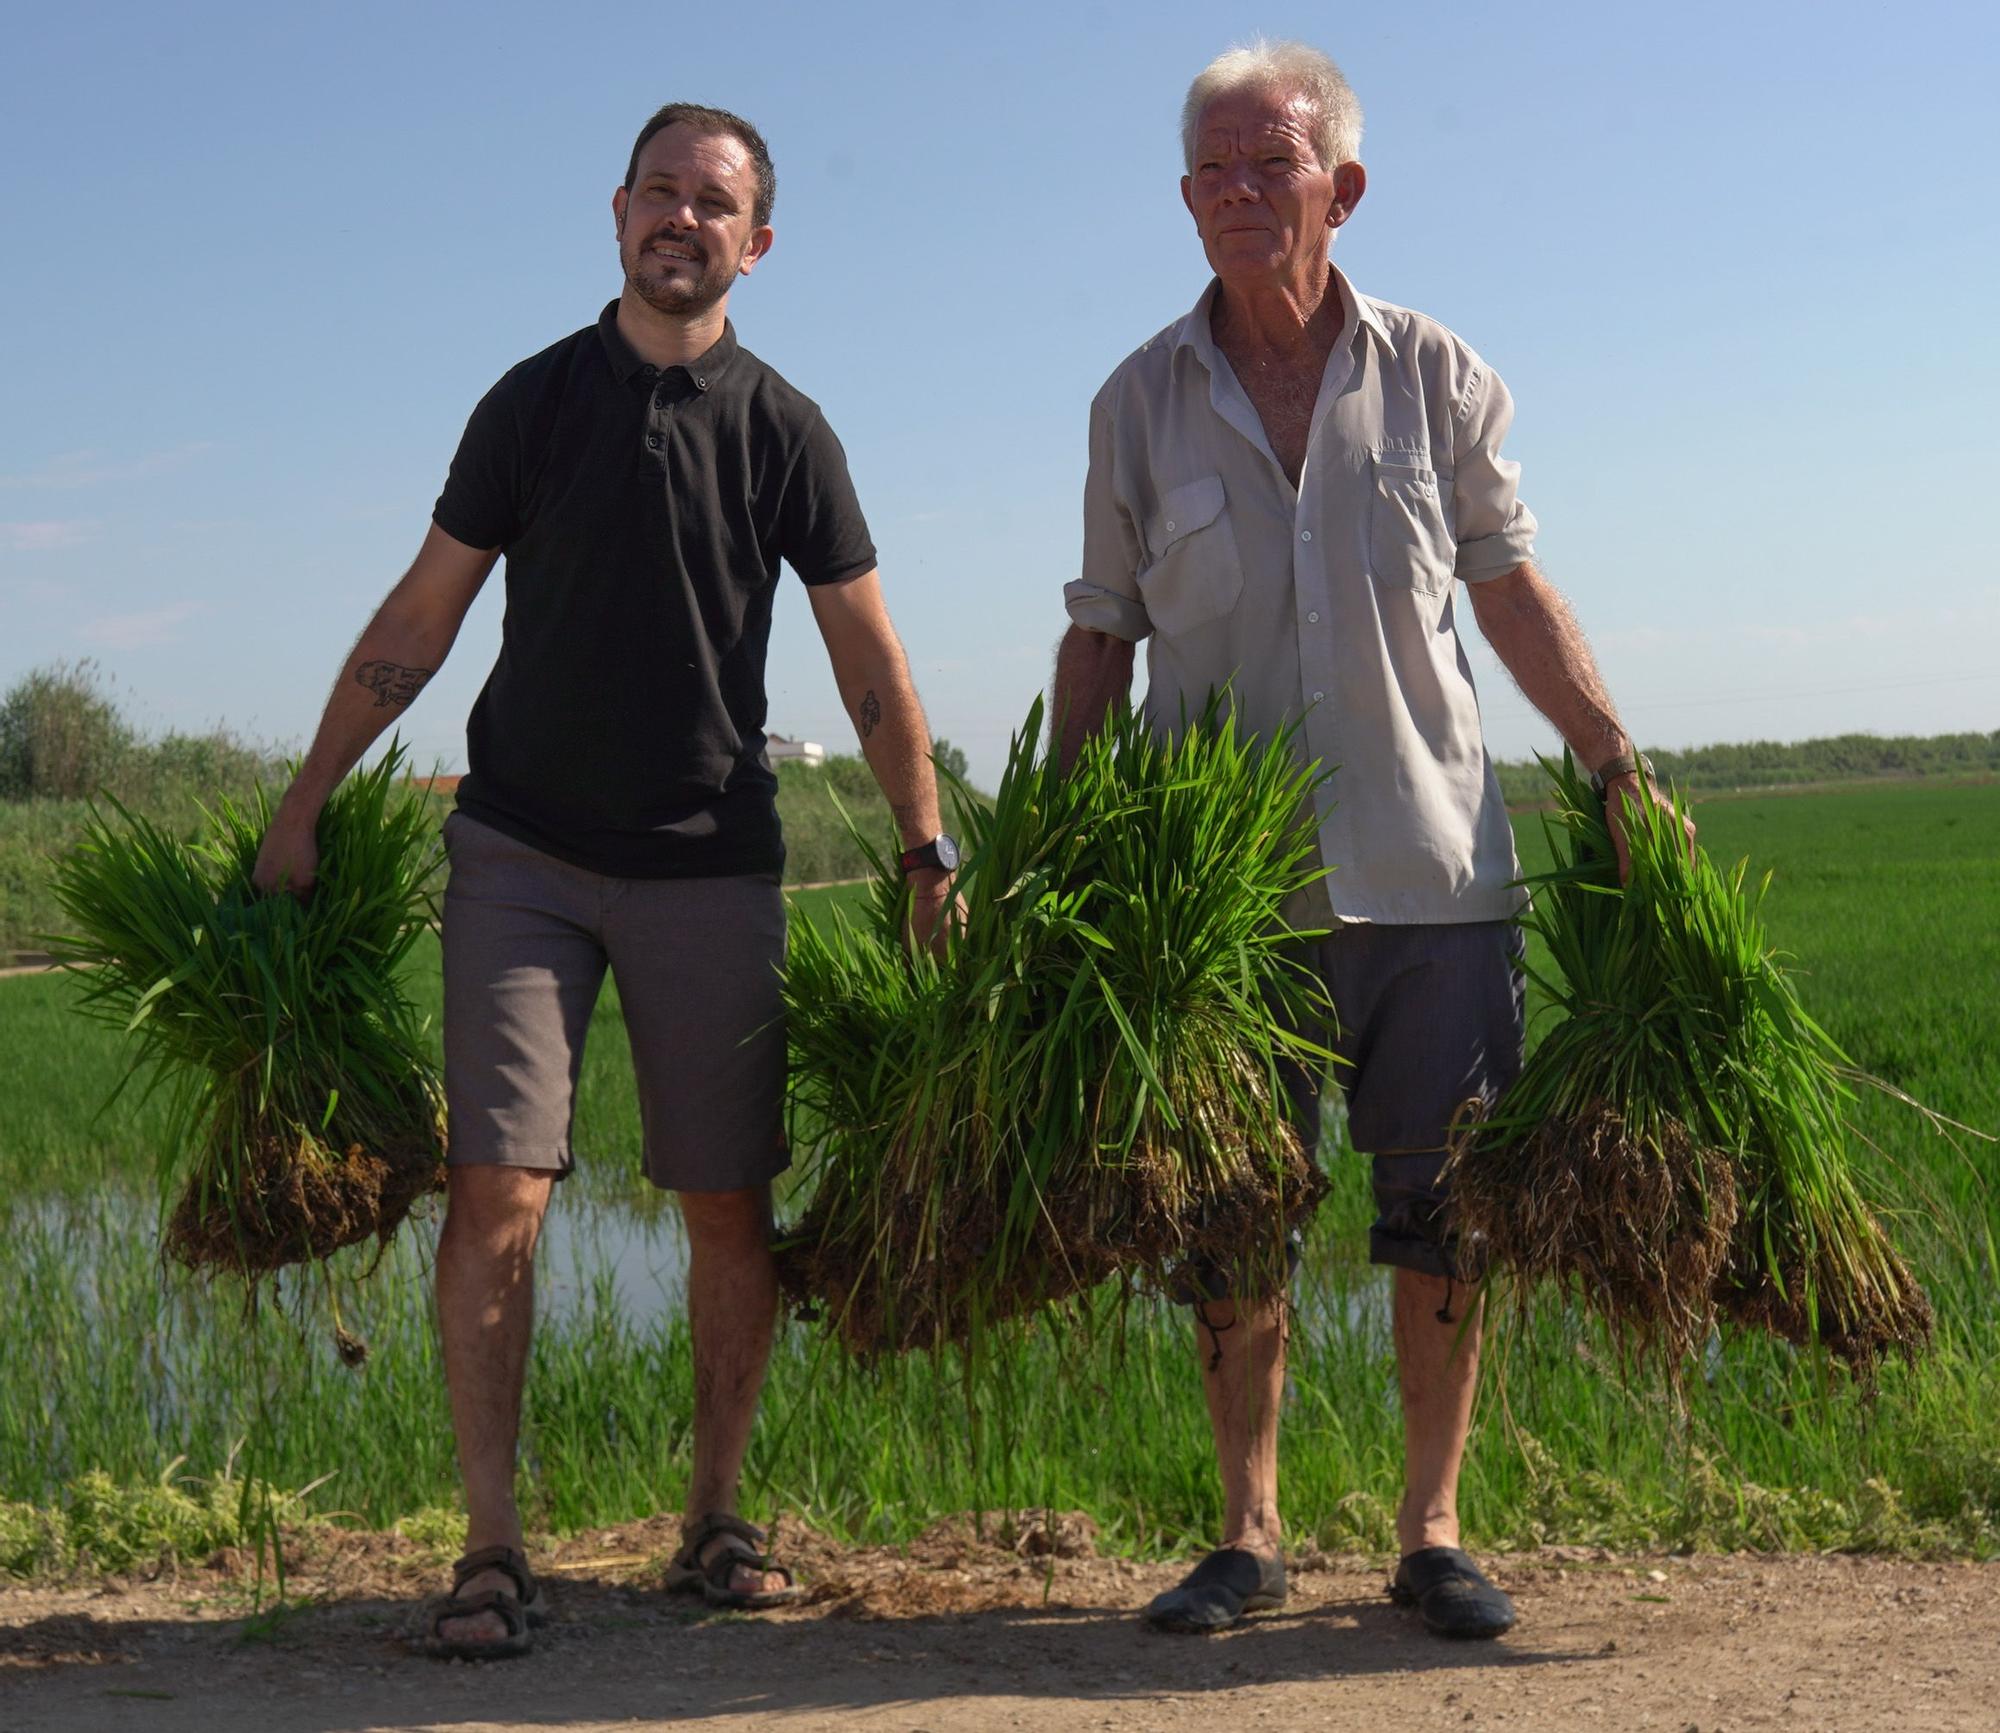 Turismo arrocero: así se puede conocer cómo se planta el arroz de l'Albufera